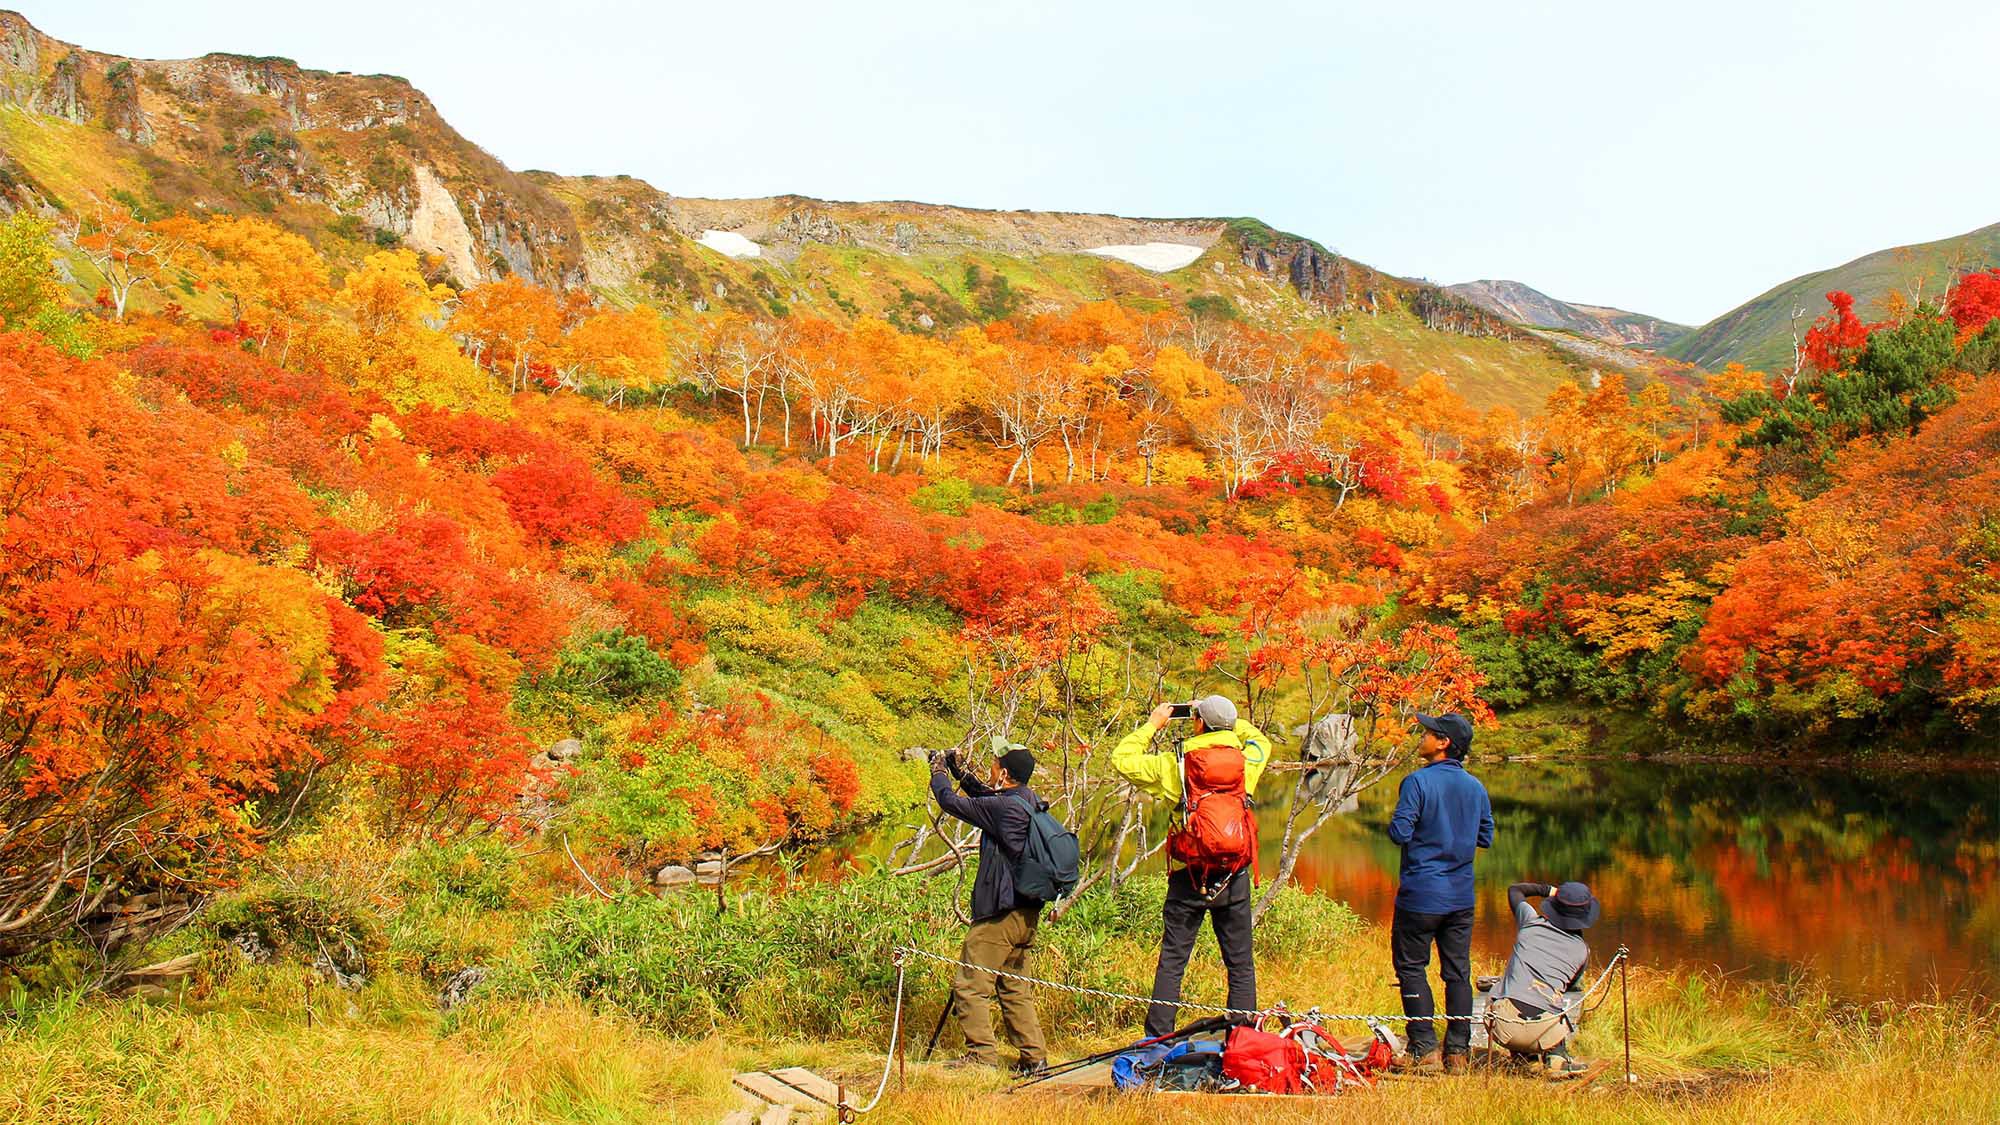 ・大雪山の秋の様子見事な紅葉に胸が躍ります